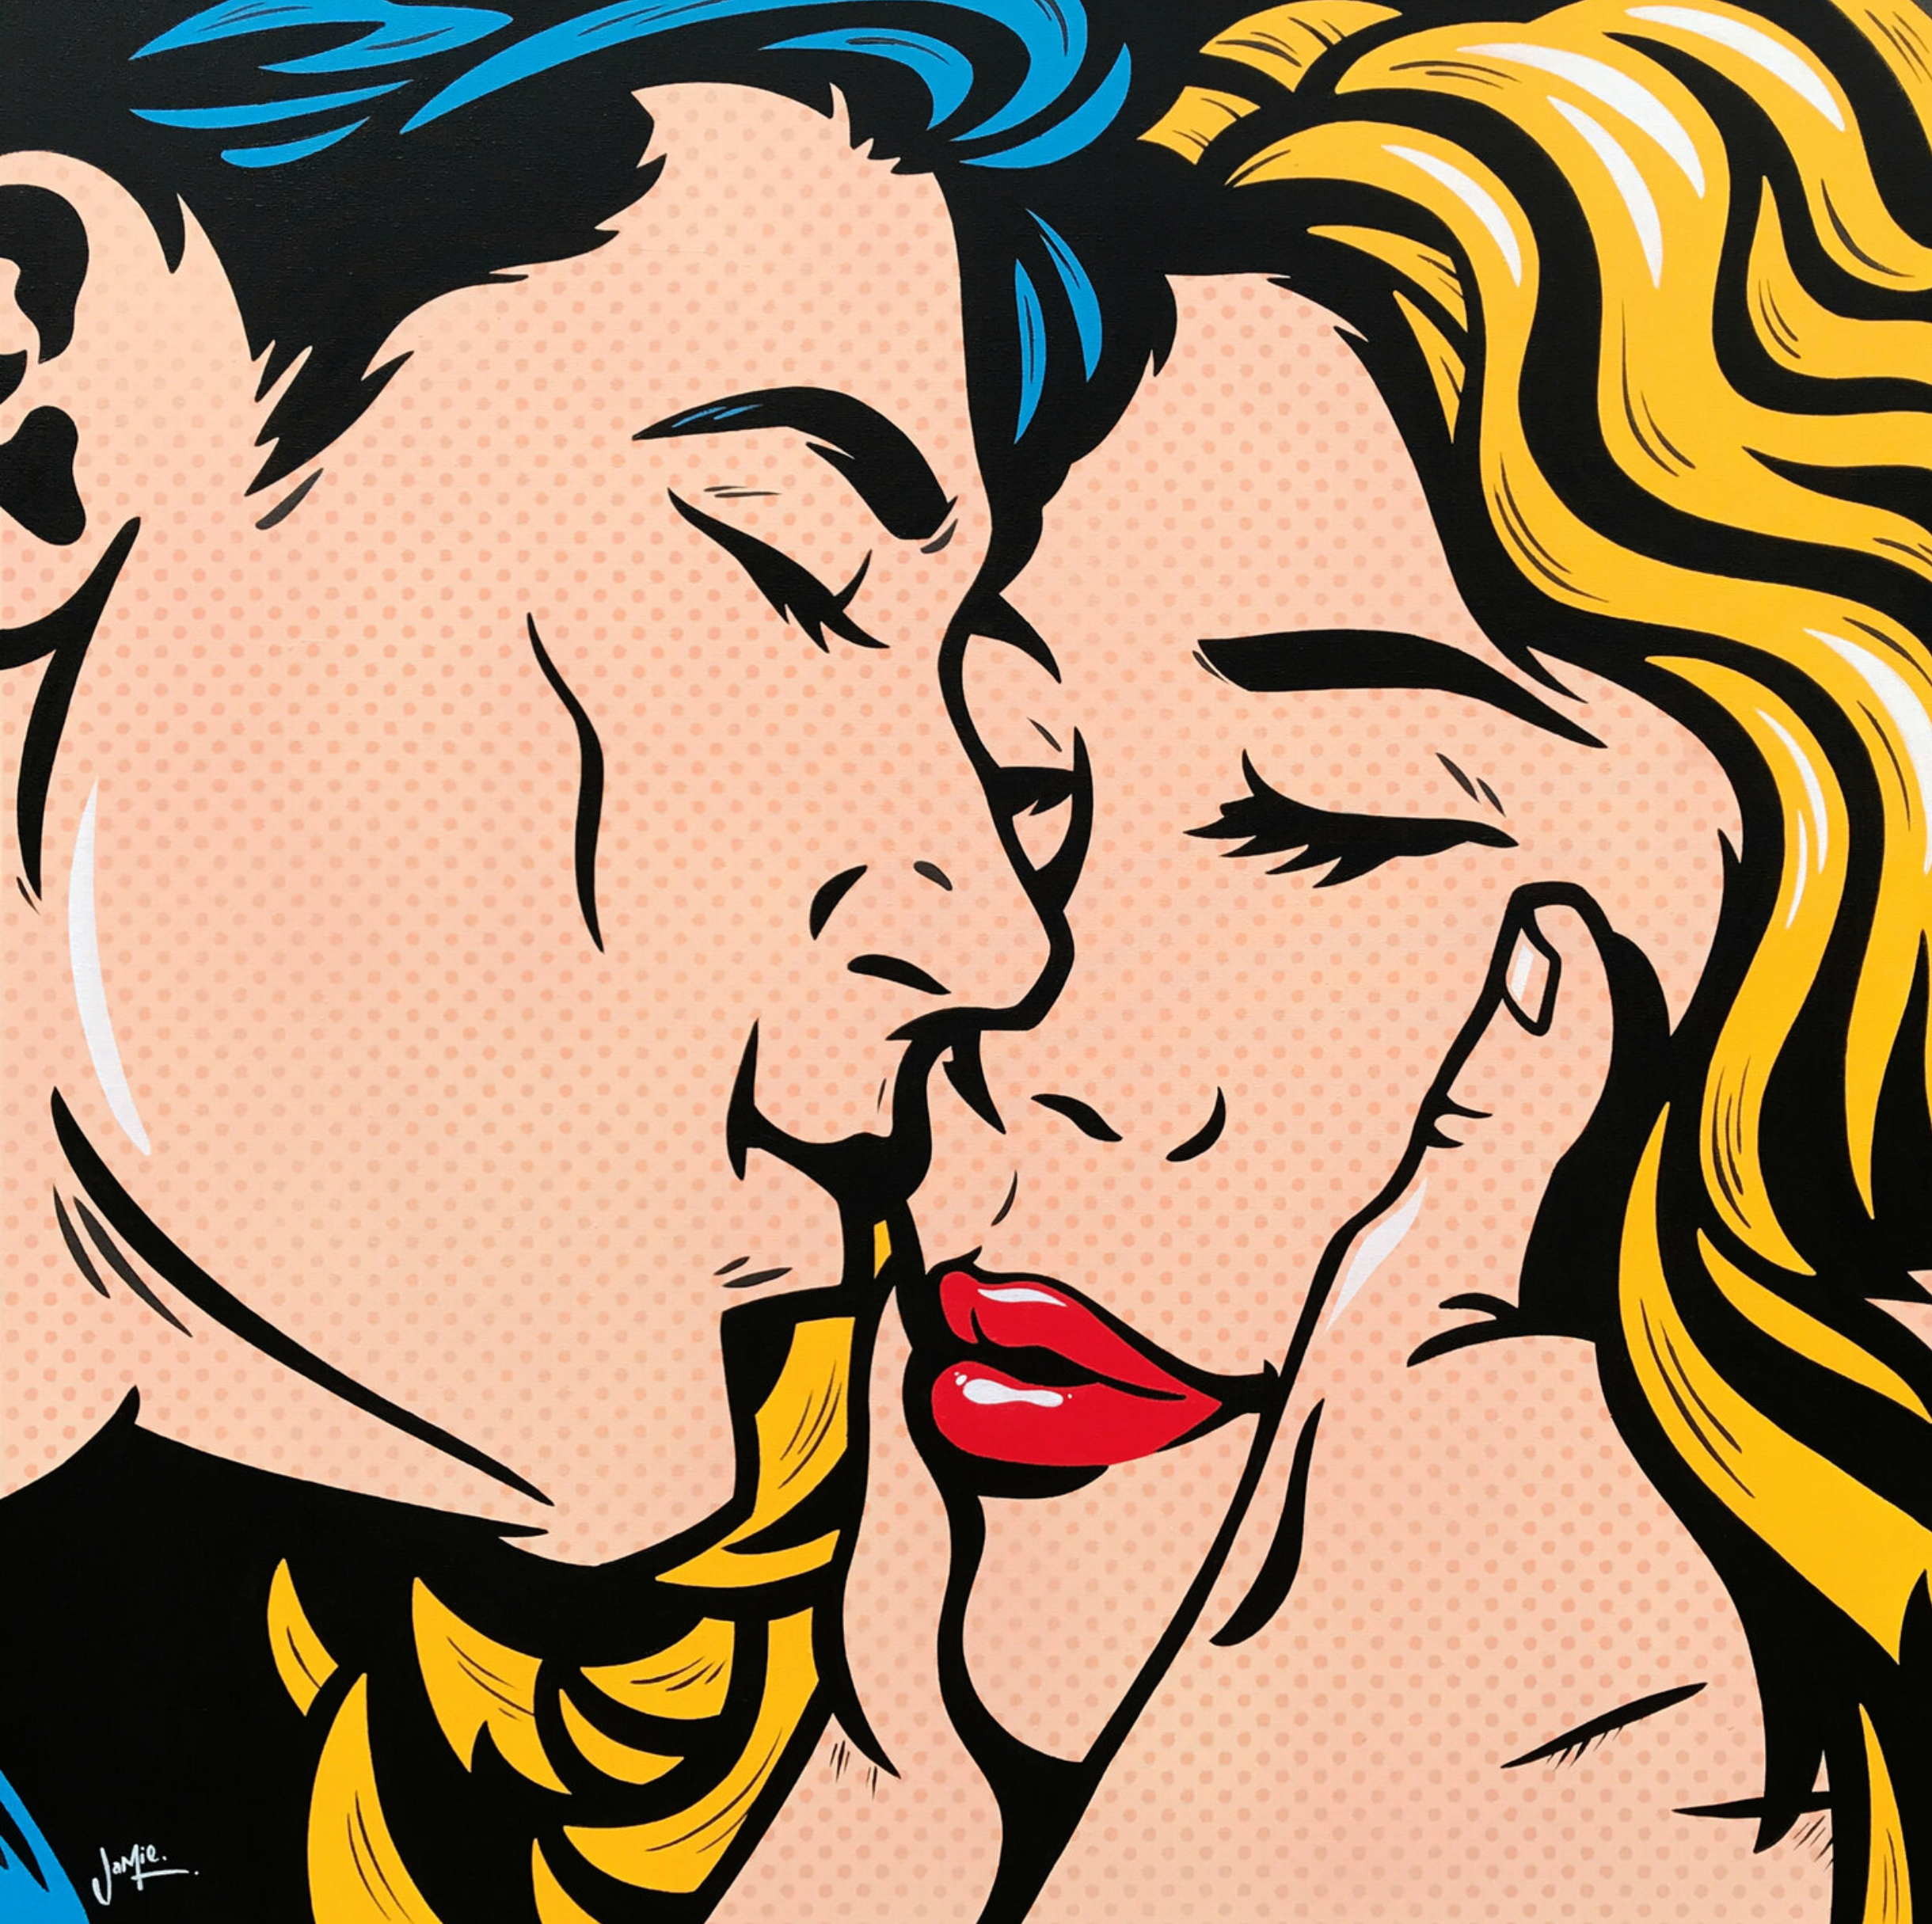 Quadro pop art "Anticipation" di Jamie Lee in stile fumetto con design originale, una giovane coppia di innamorati anticipa il primo bacio mentre lui le tiene delicatamente il viso. Quadro pop art in stile fumetto con design originale.